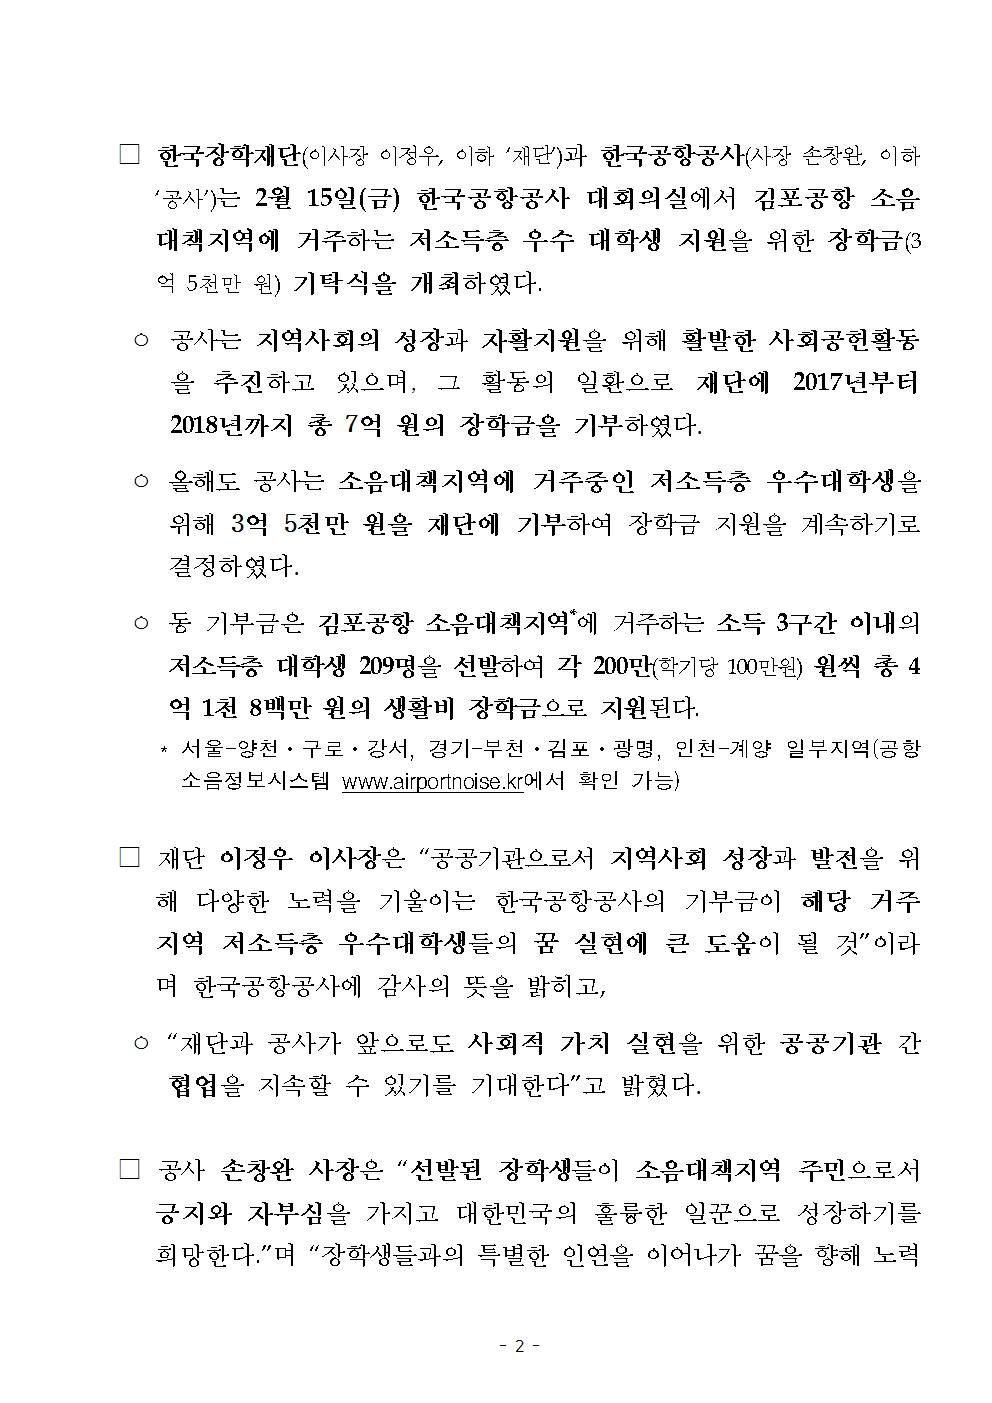 02-18(월)[보도자료] 한국장학재단 한국공항공사 장학금 기탁식002.jpg